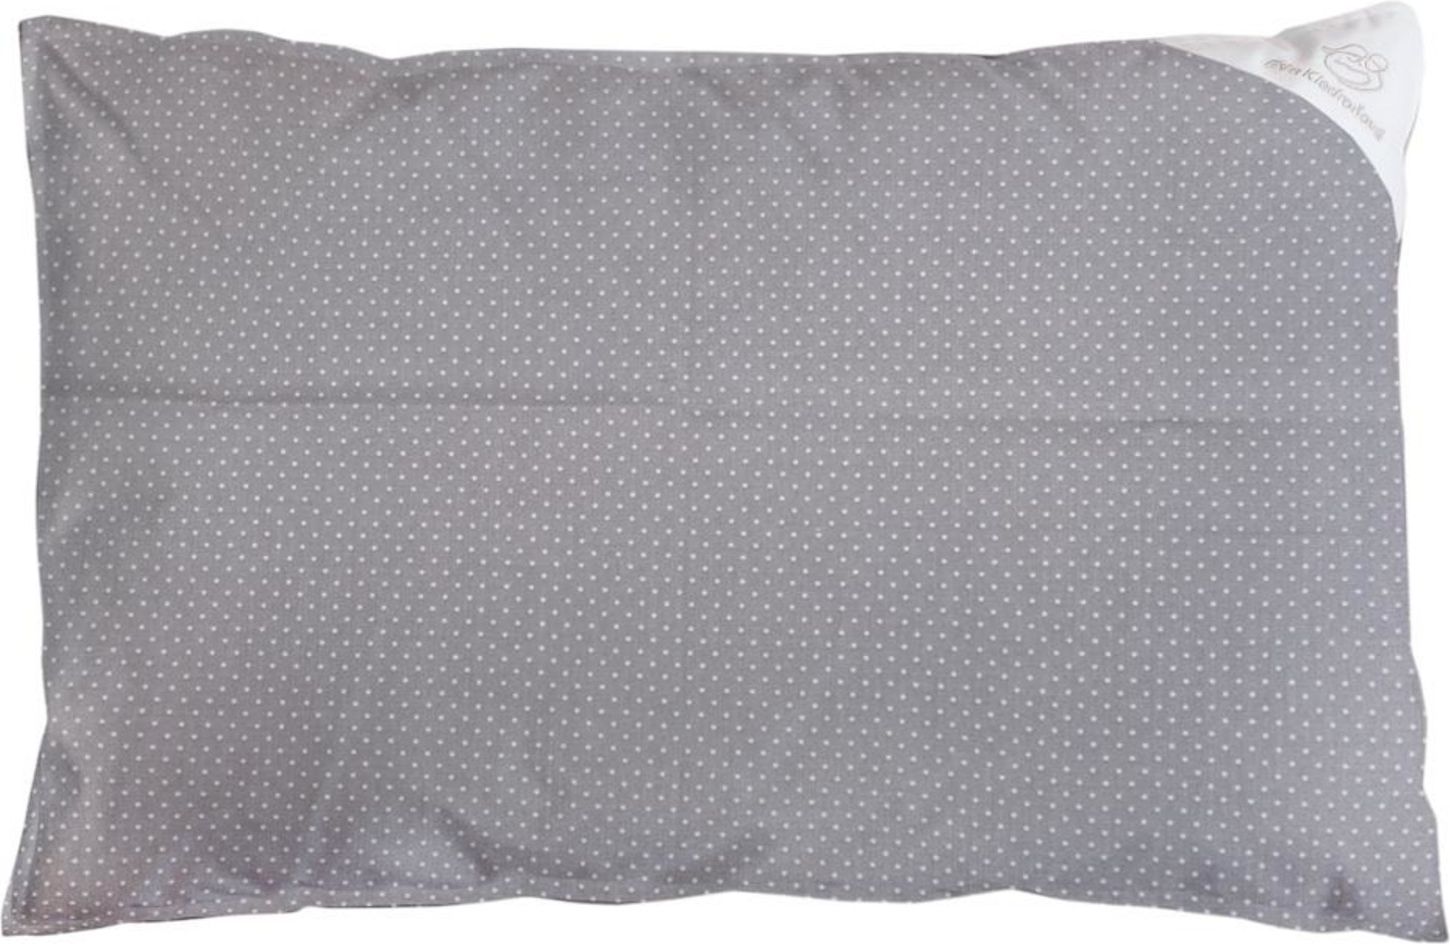 Povlak na polštář šedý s puntíky - 60x40cm - obrázek 1